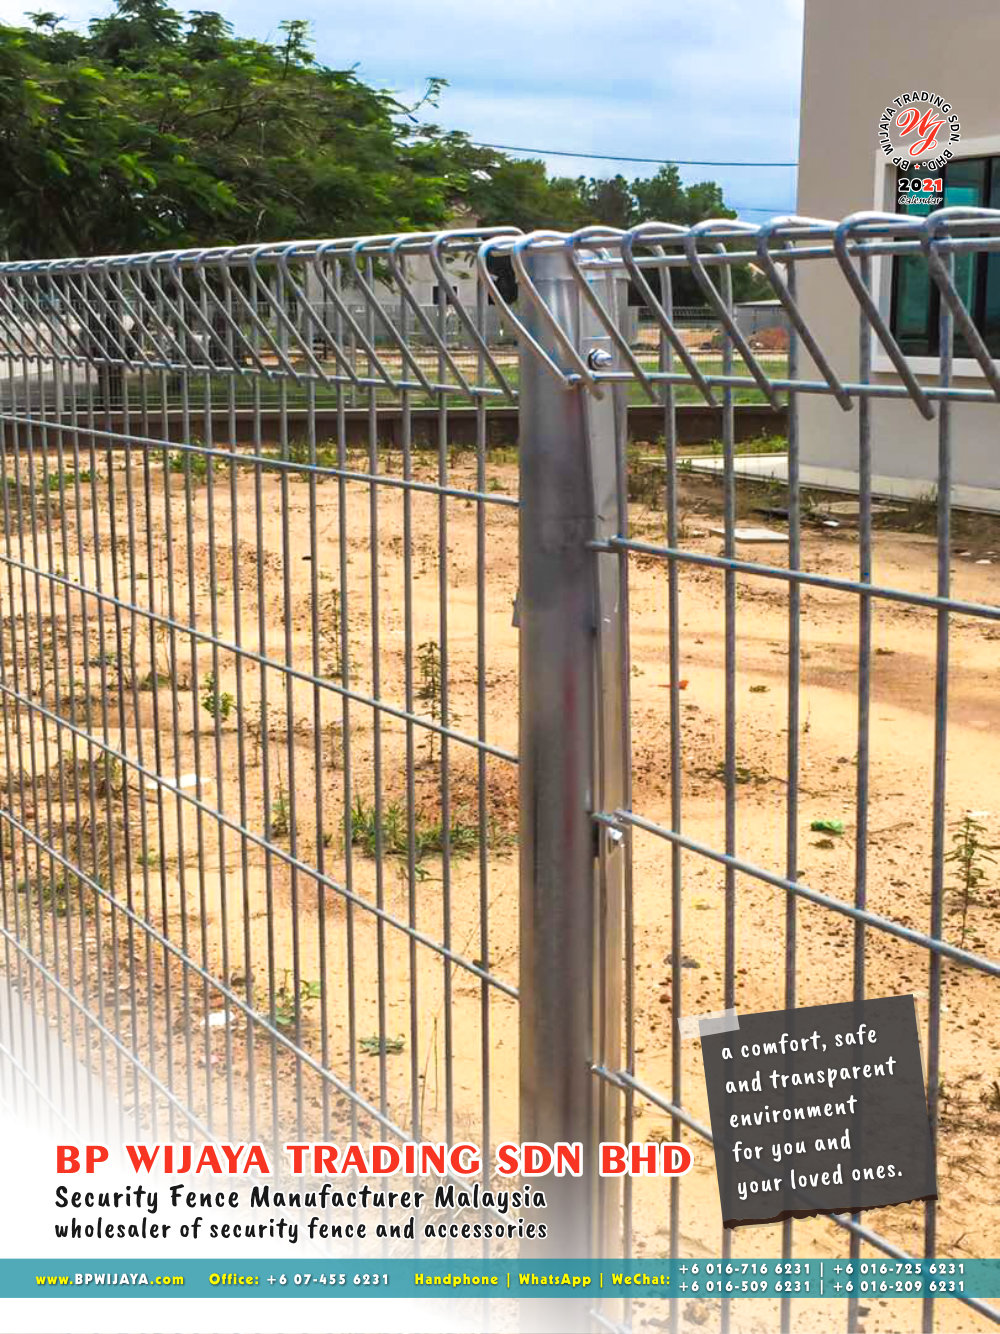 Calendar 2021 BP Wijaya Trading Security Fence Manufacturer Malaysia wholesaler of security fence and accessories Malaysia Kuala Lumpur Johor A07